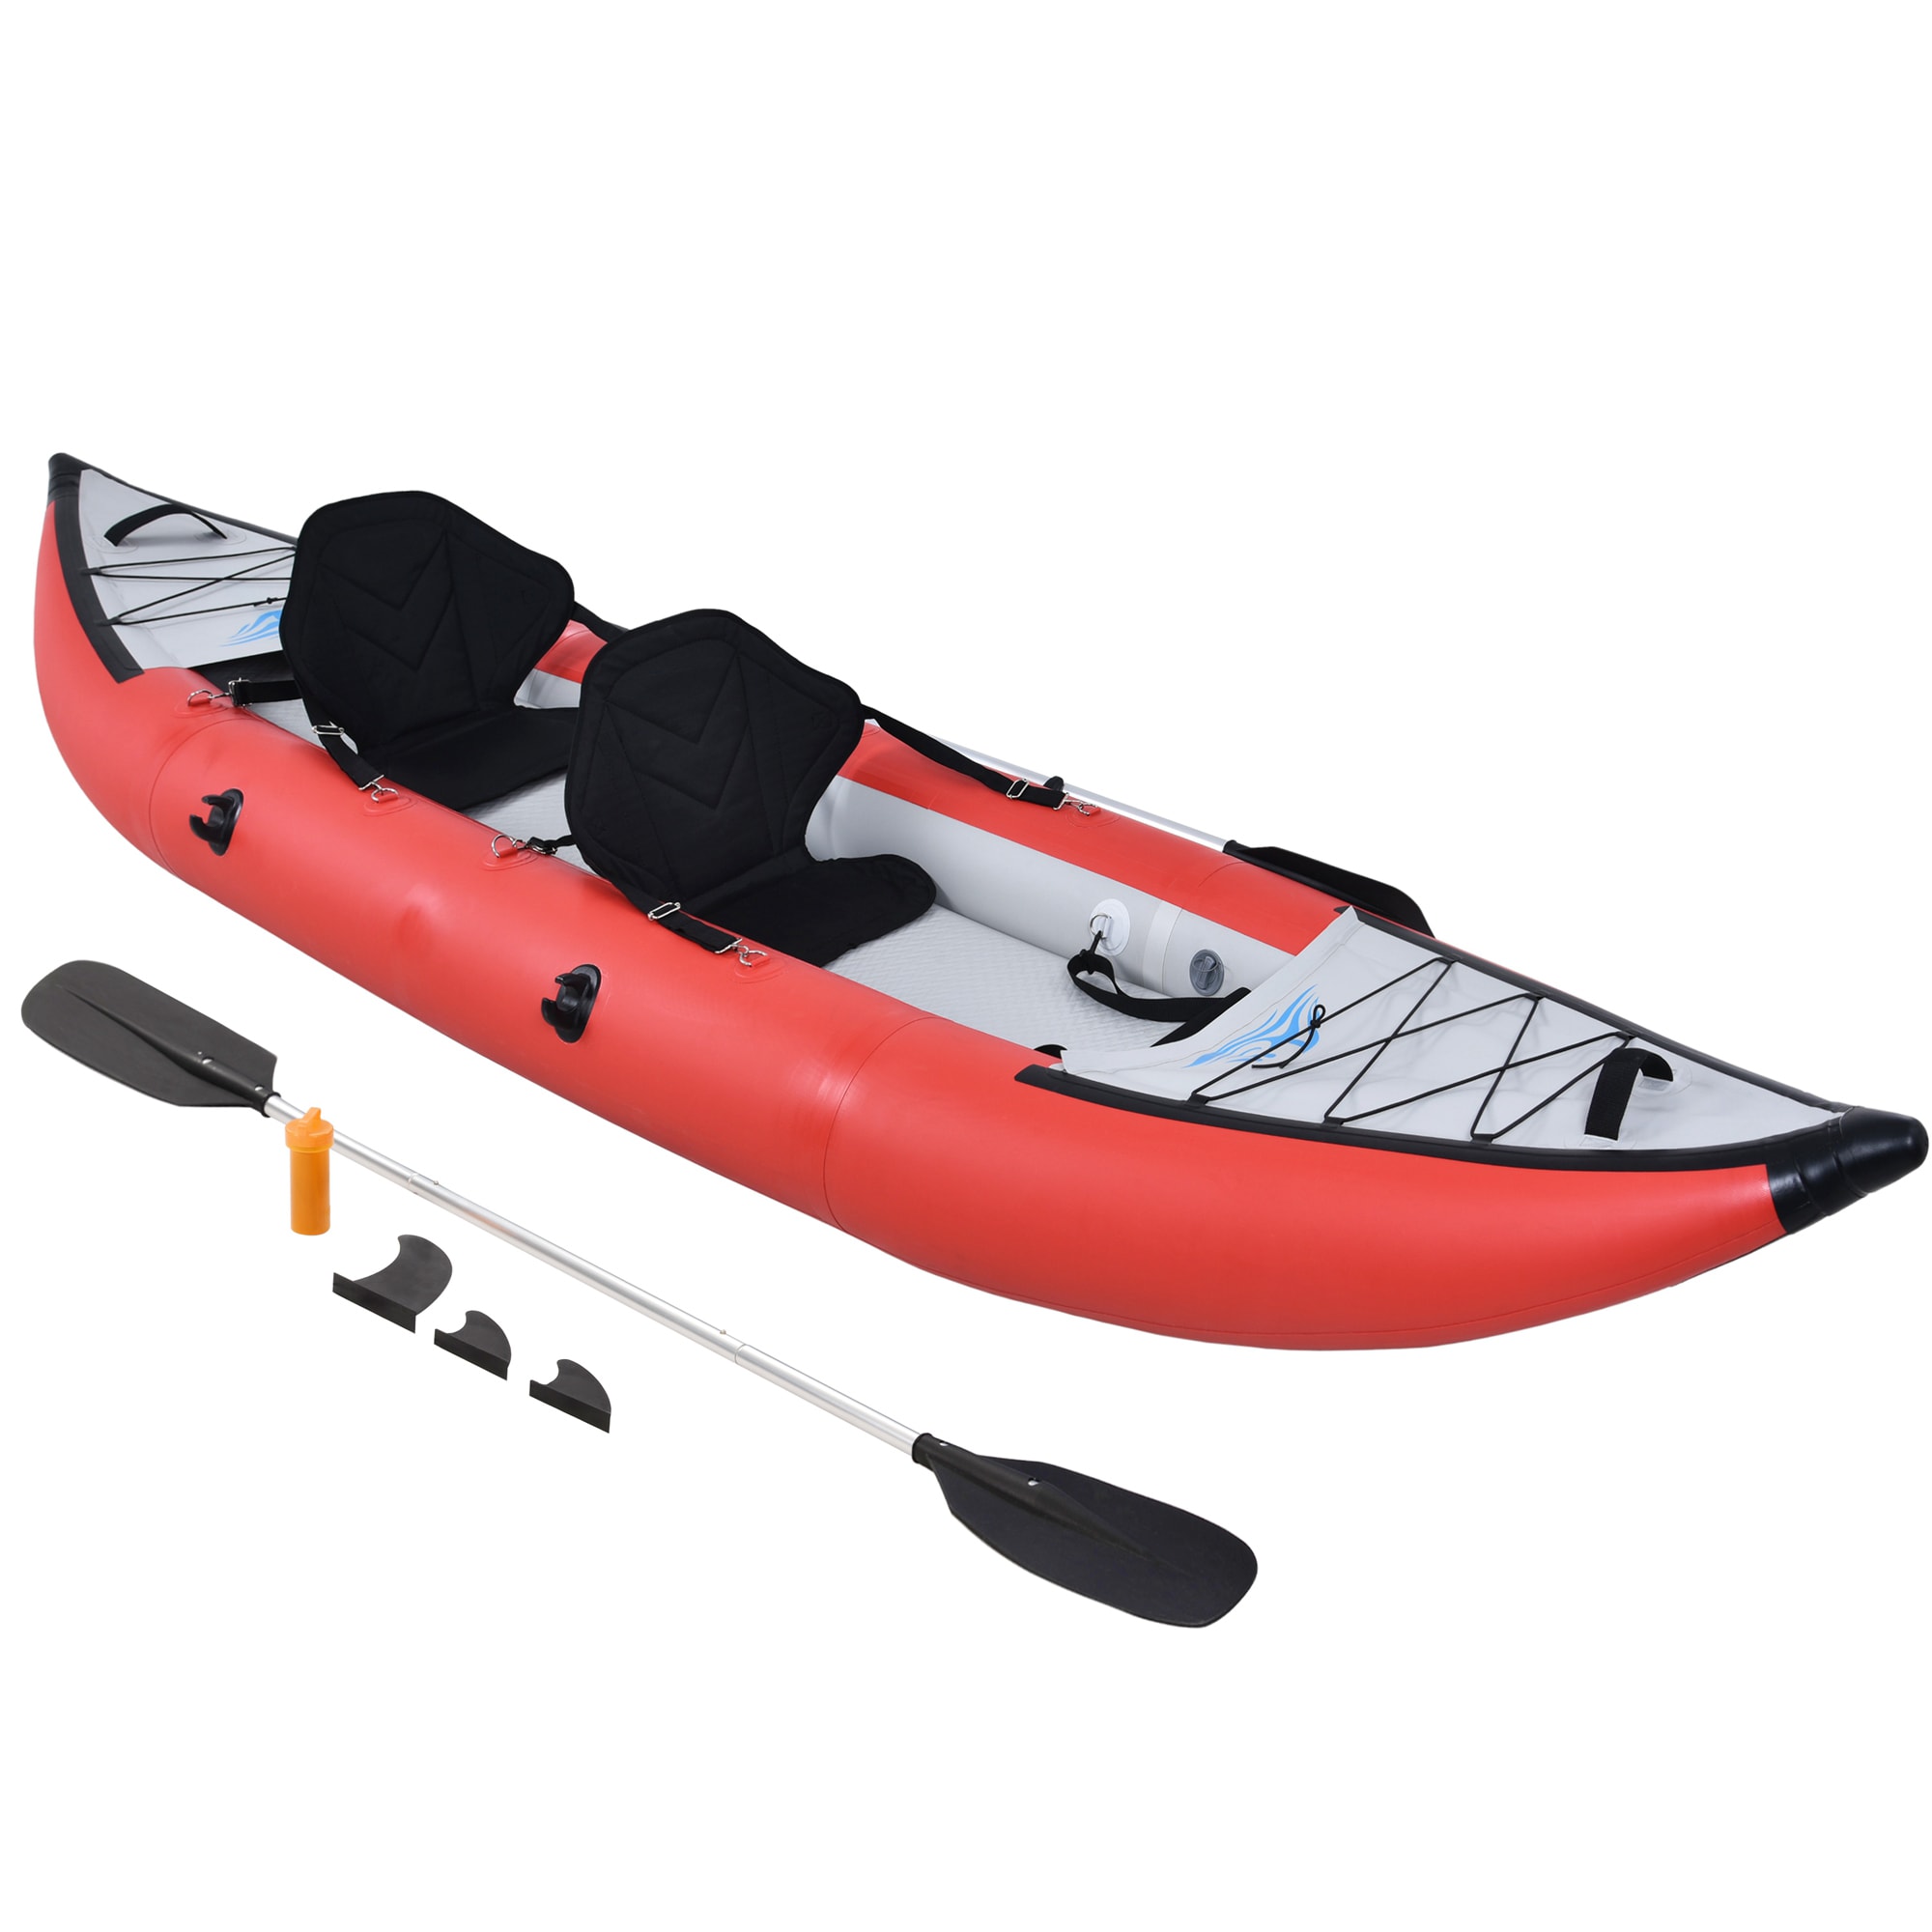 12.5 Foot Long Kayaks at